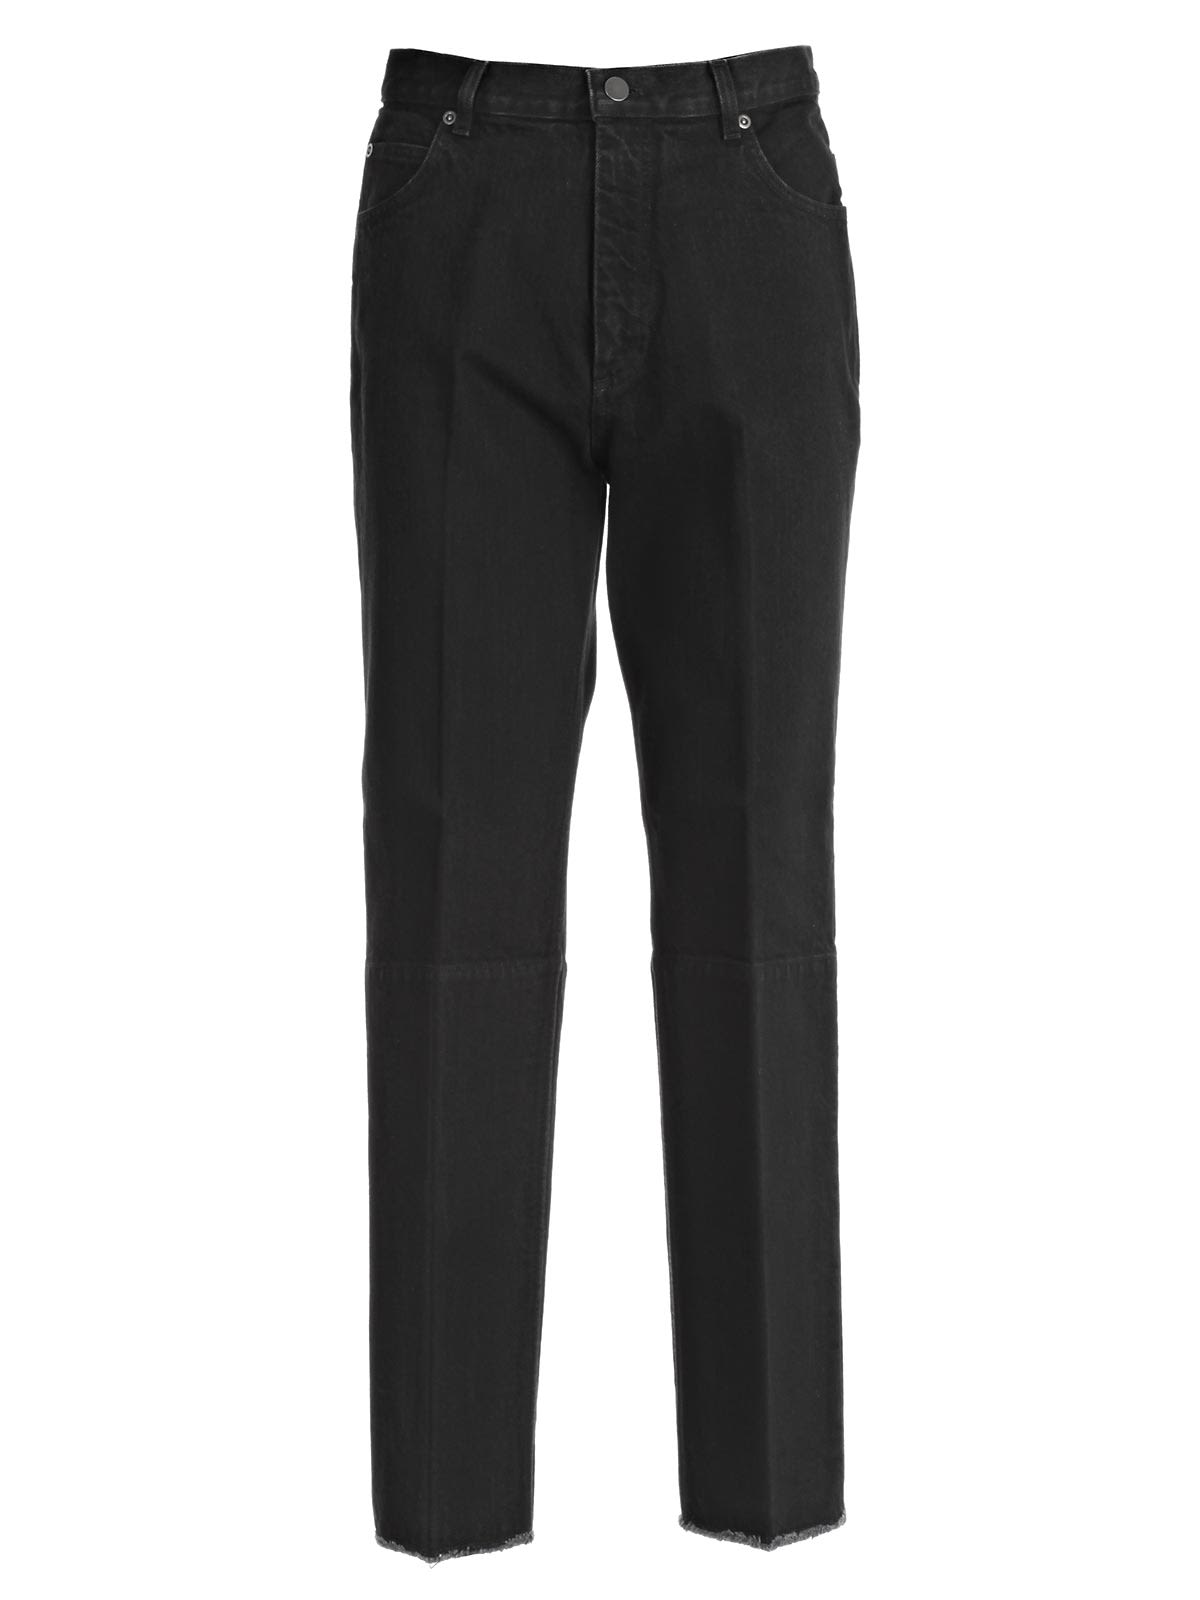 Celine - Celine Trousers - 38no Black, Women's Trousers | Italist